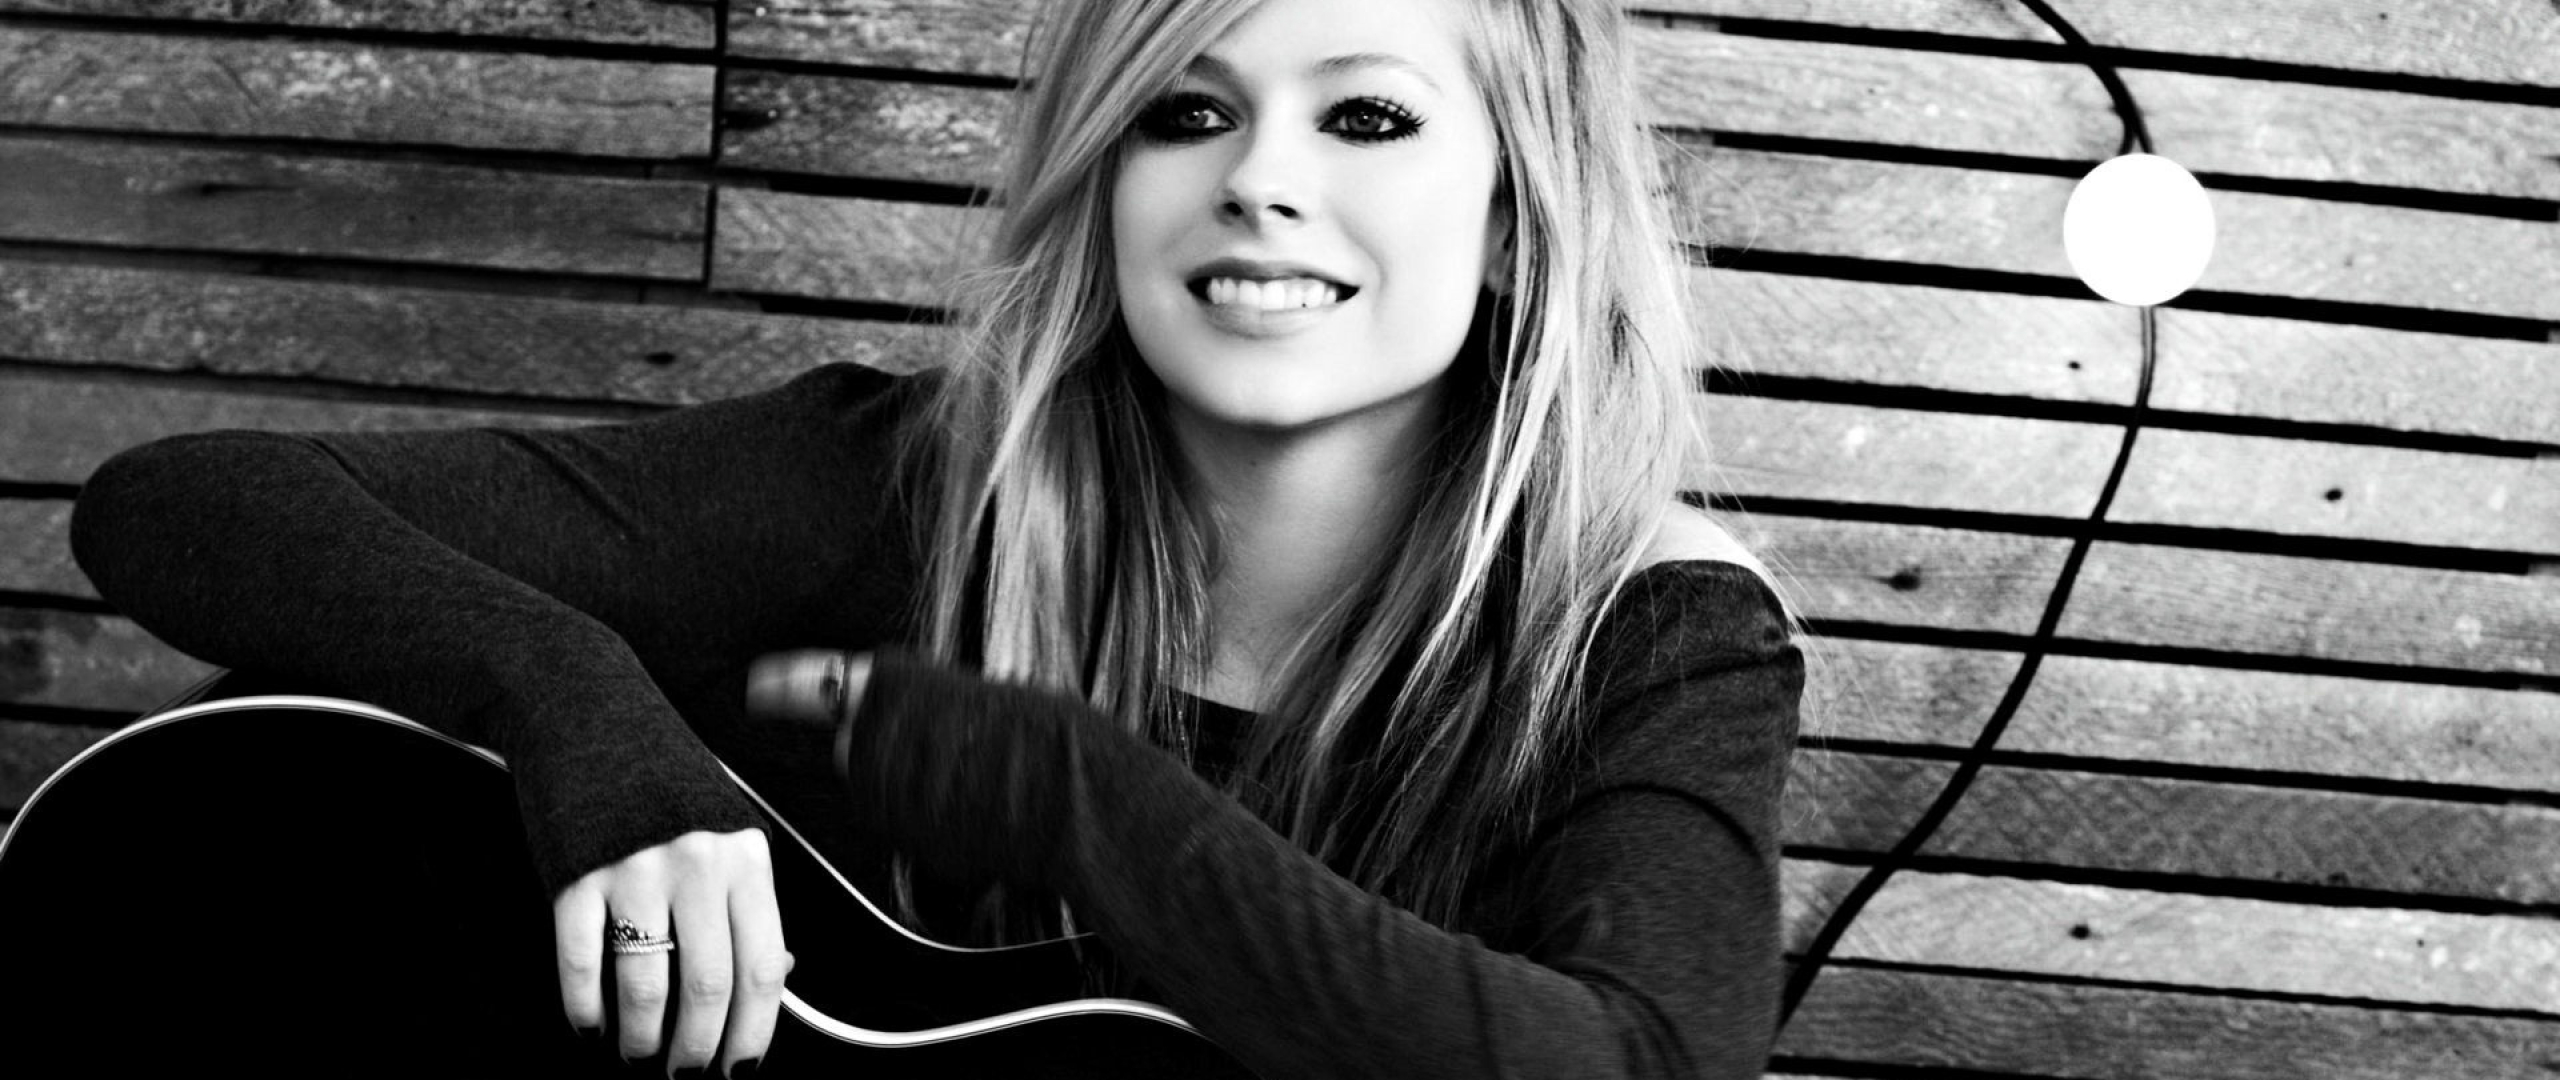 Avril Lavigne Photoshoot, Full HD Wallpaper